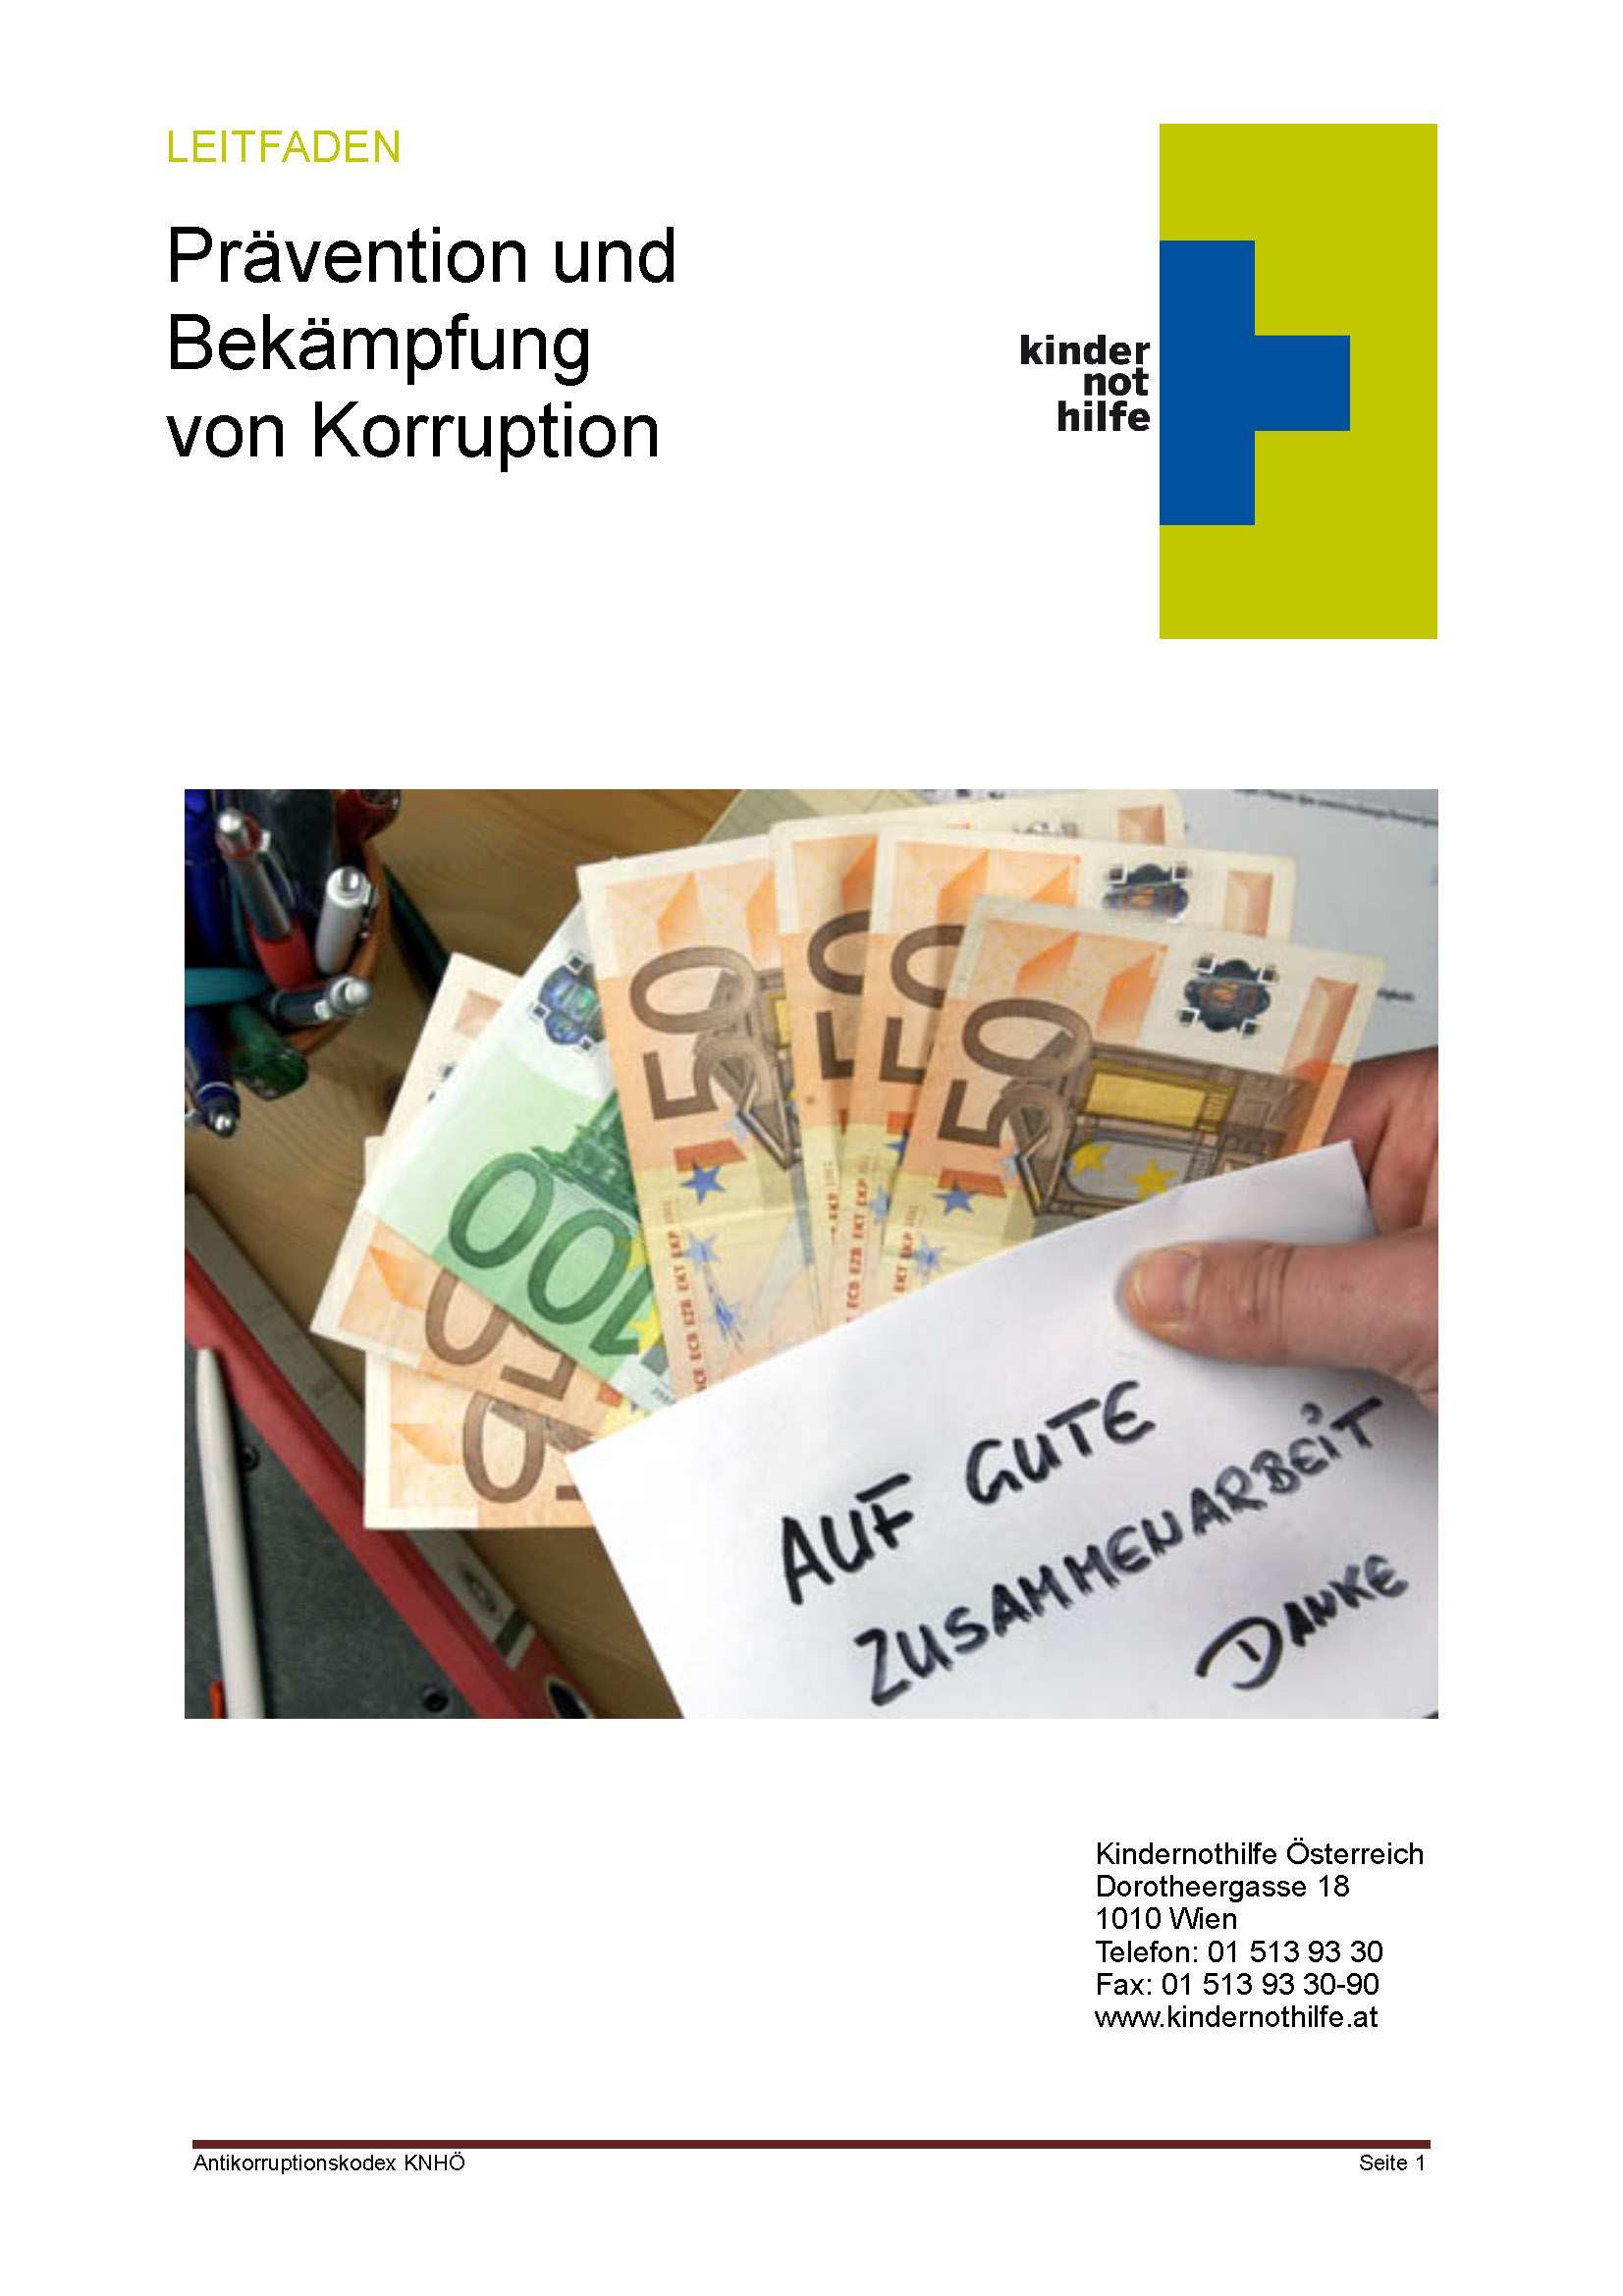 Antikorruptionskodex